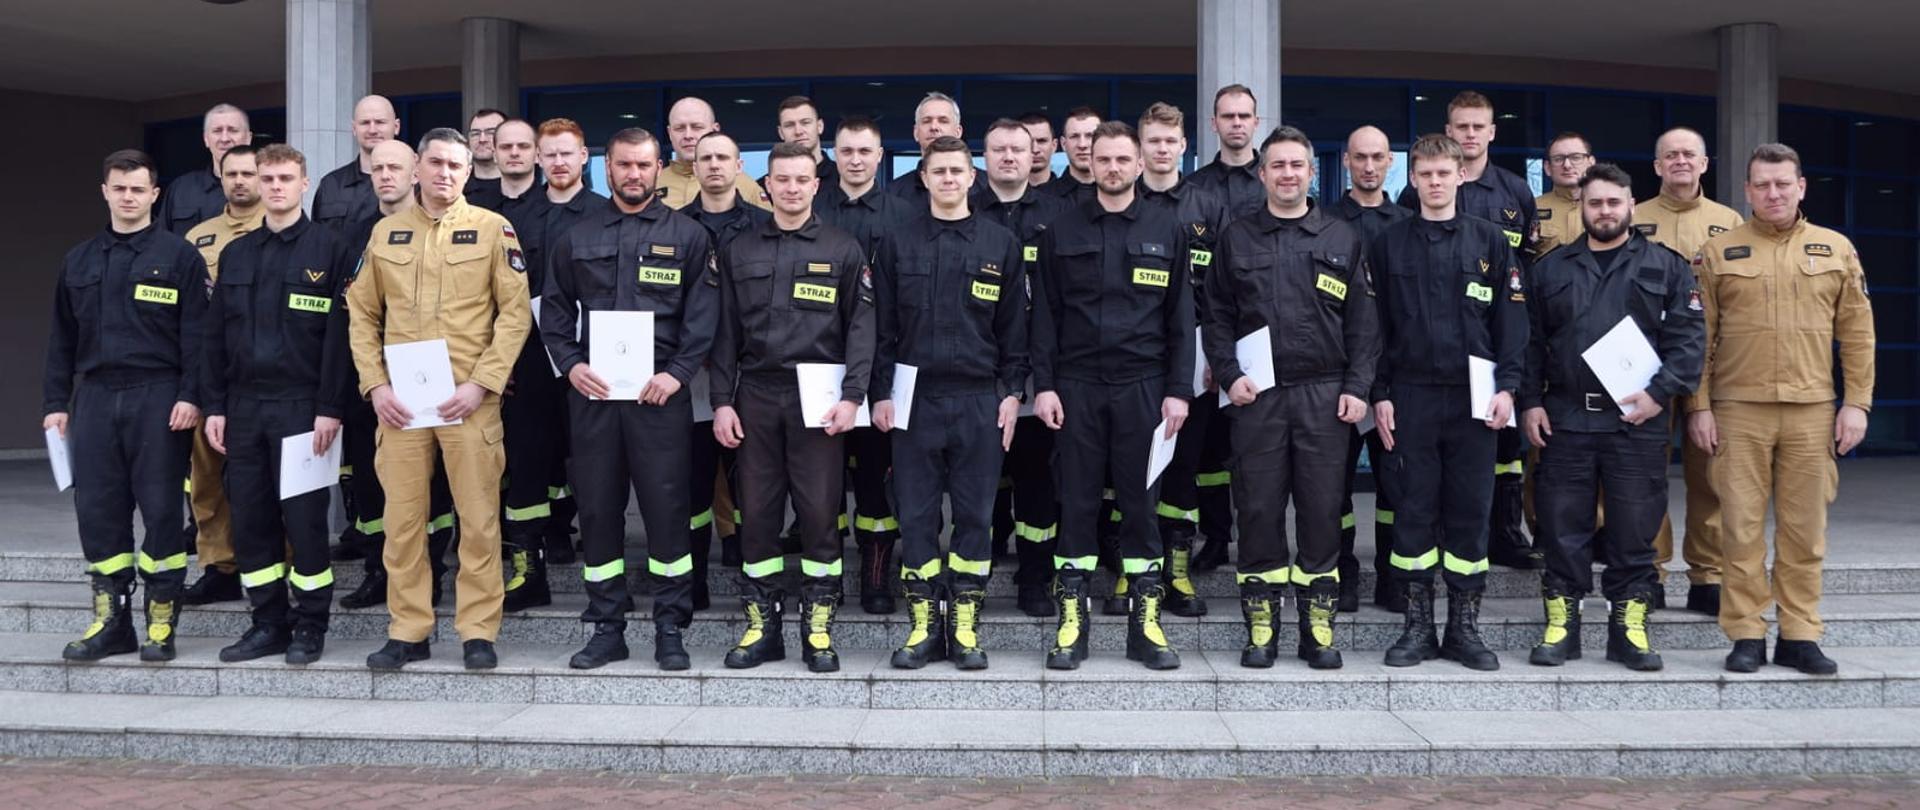 Pamiątkowe zdjęcie grupowe strażaków będących uczestnikami szkolenia z zakresu transportu towarów niebezpiecznych (30 osób) w towarzystwie trzech oficerów CS PSP